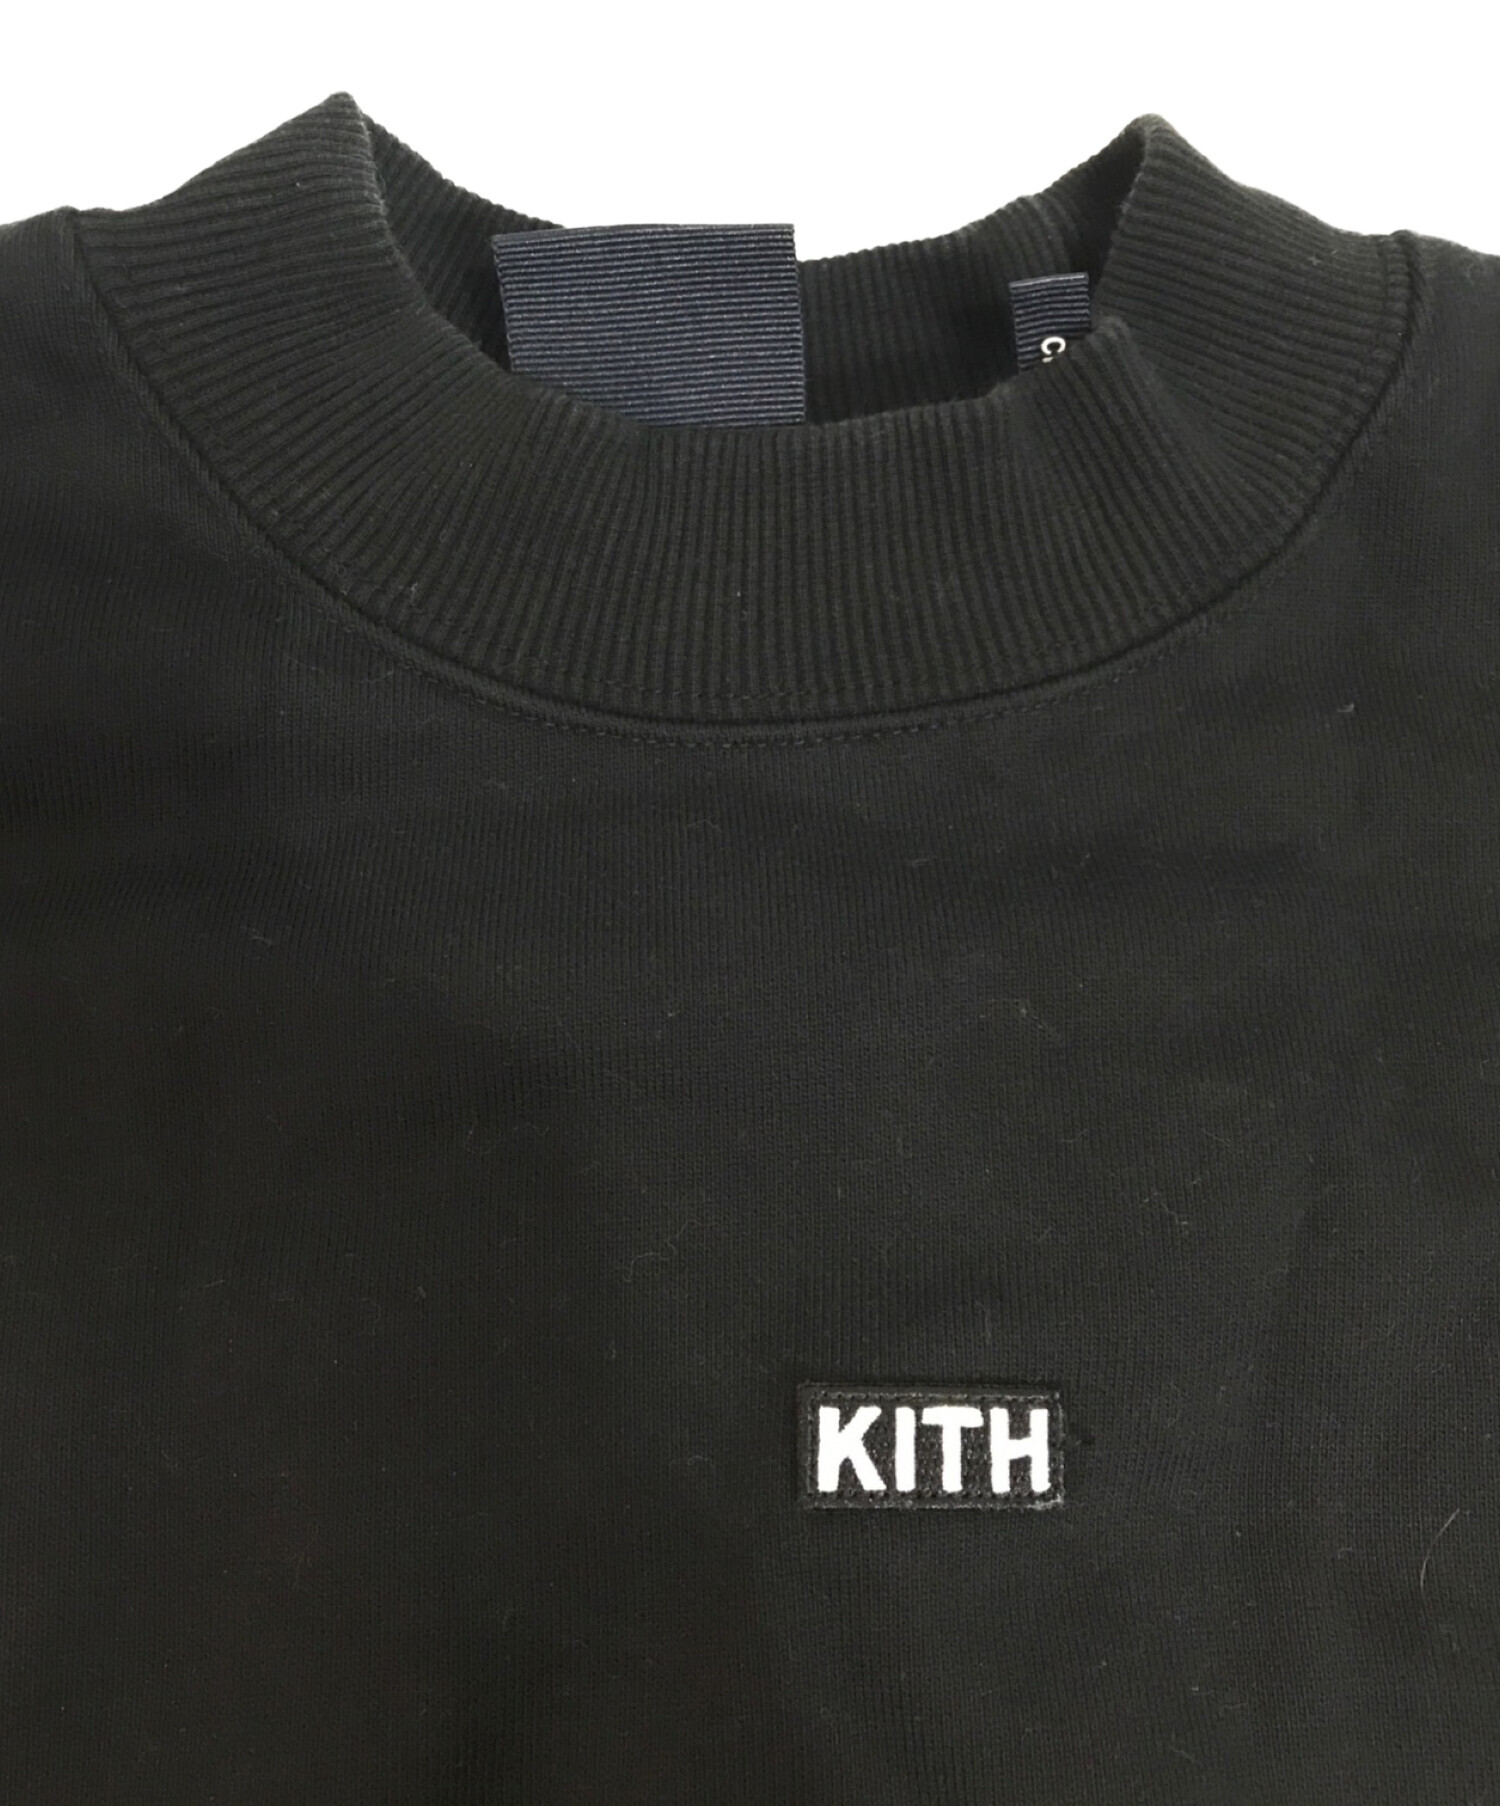 KITH (キス) ブロックロゴモックネックスウェット ブラック サイズ:M